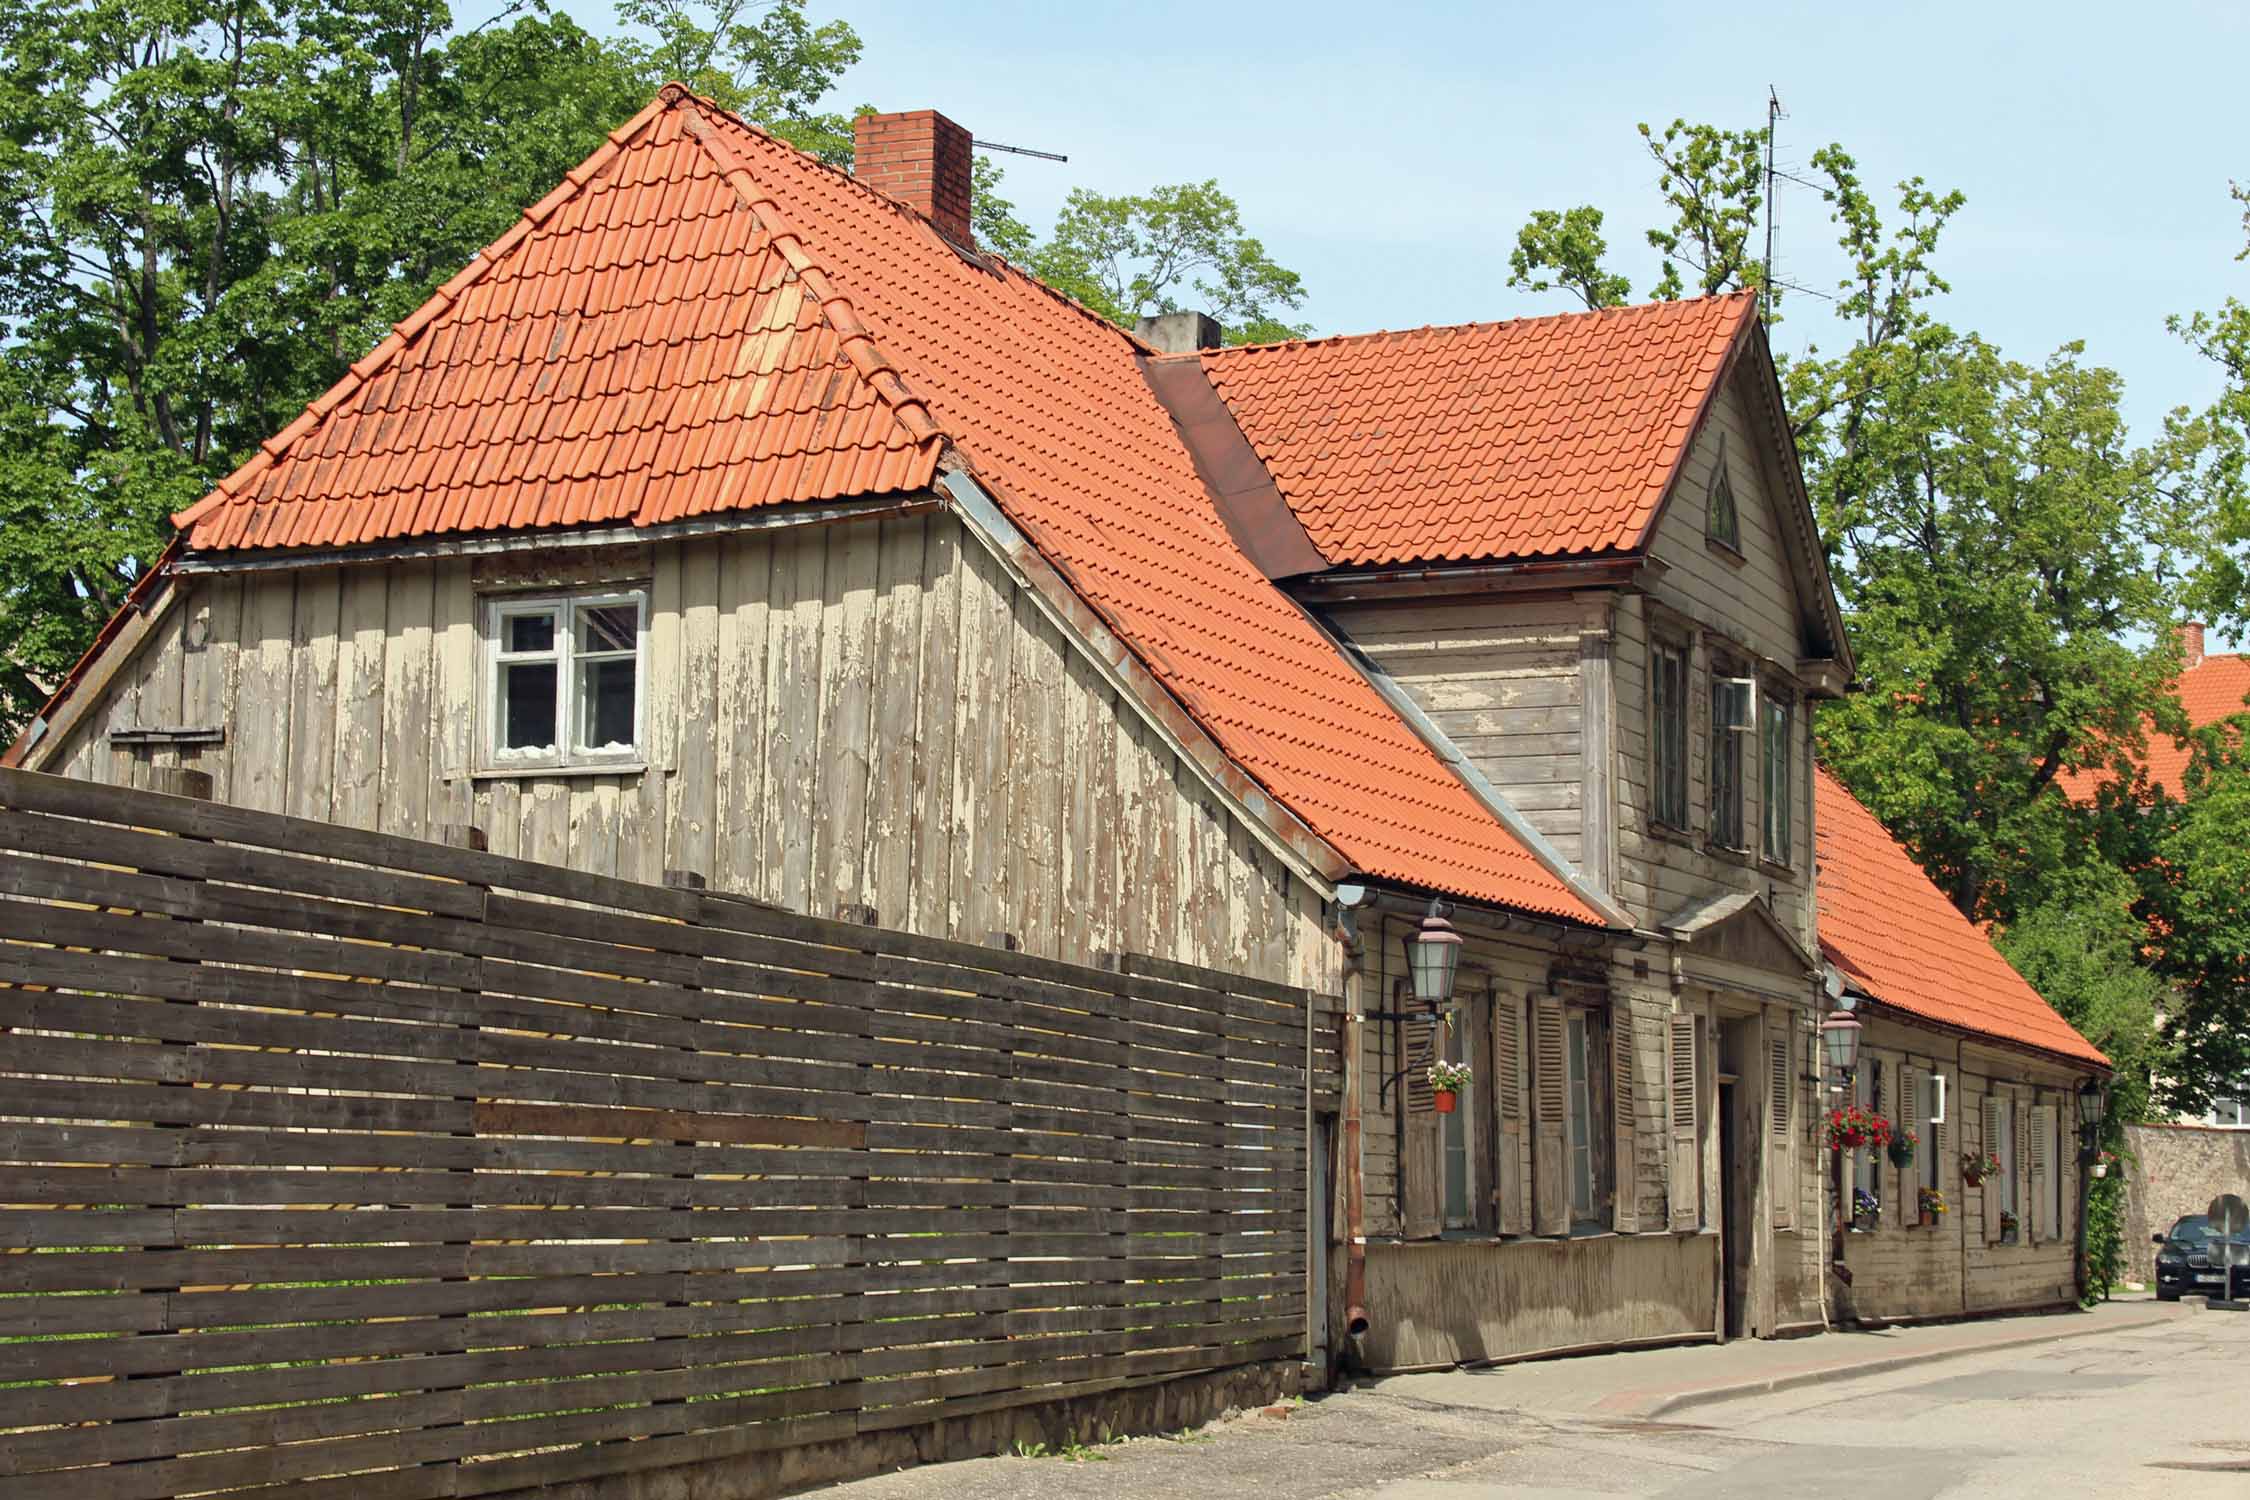 Cesis, maisons typiques en bois